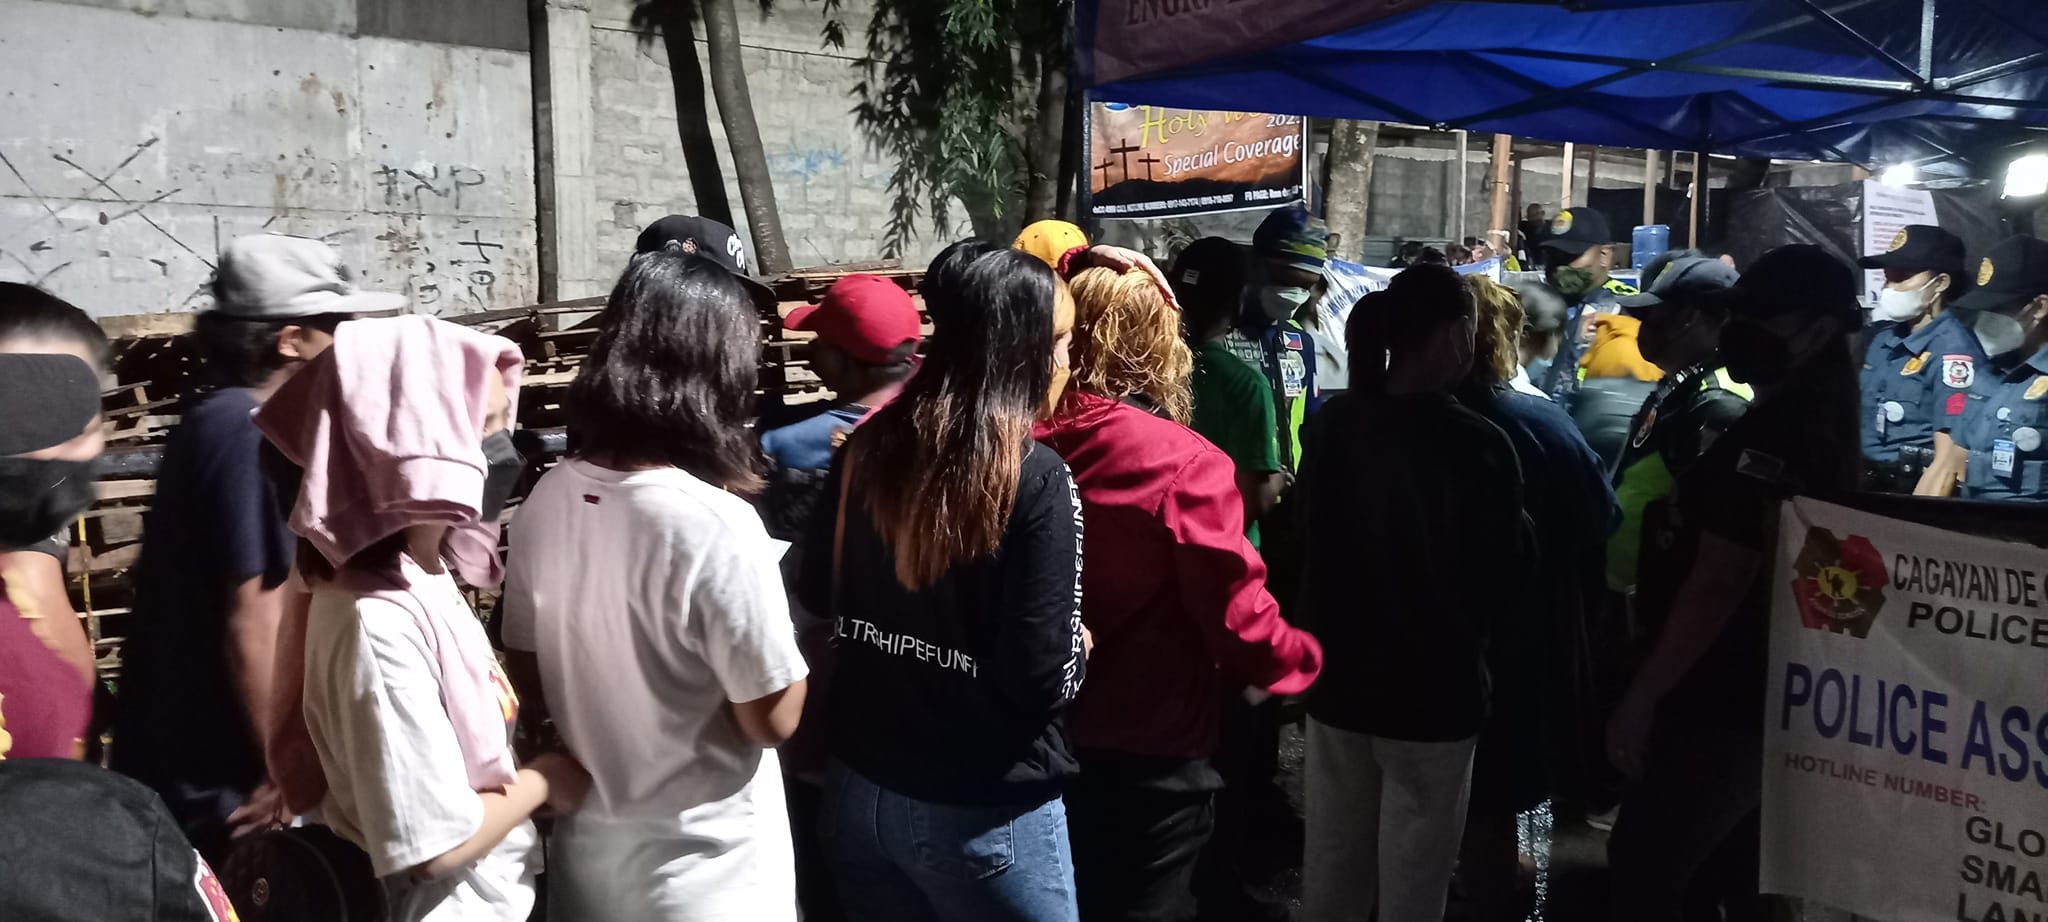 Cagayan de Oro sees 80% drop in pilgrimage crowds